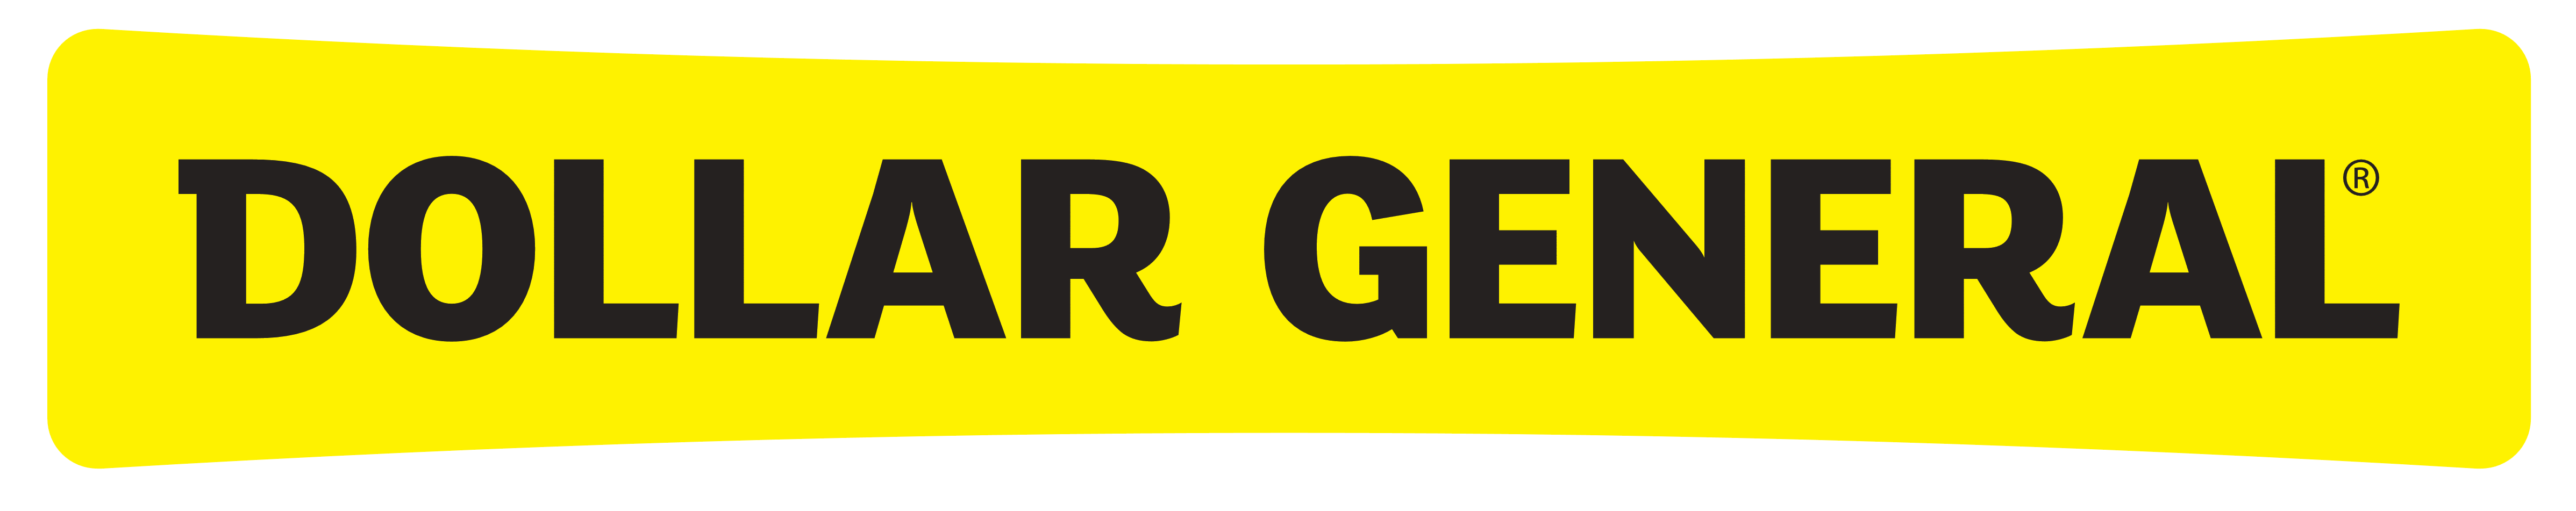 Dollar General Logo PNG Pic